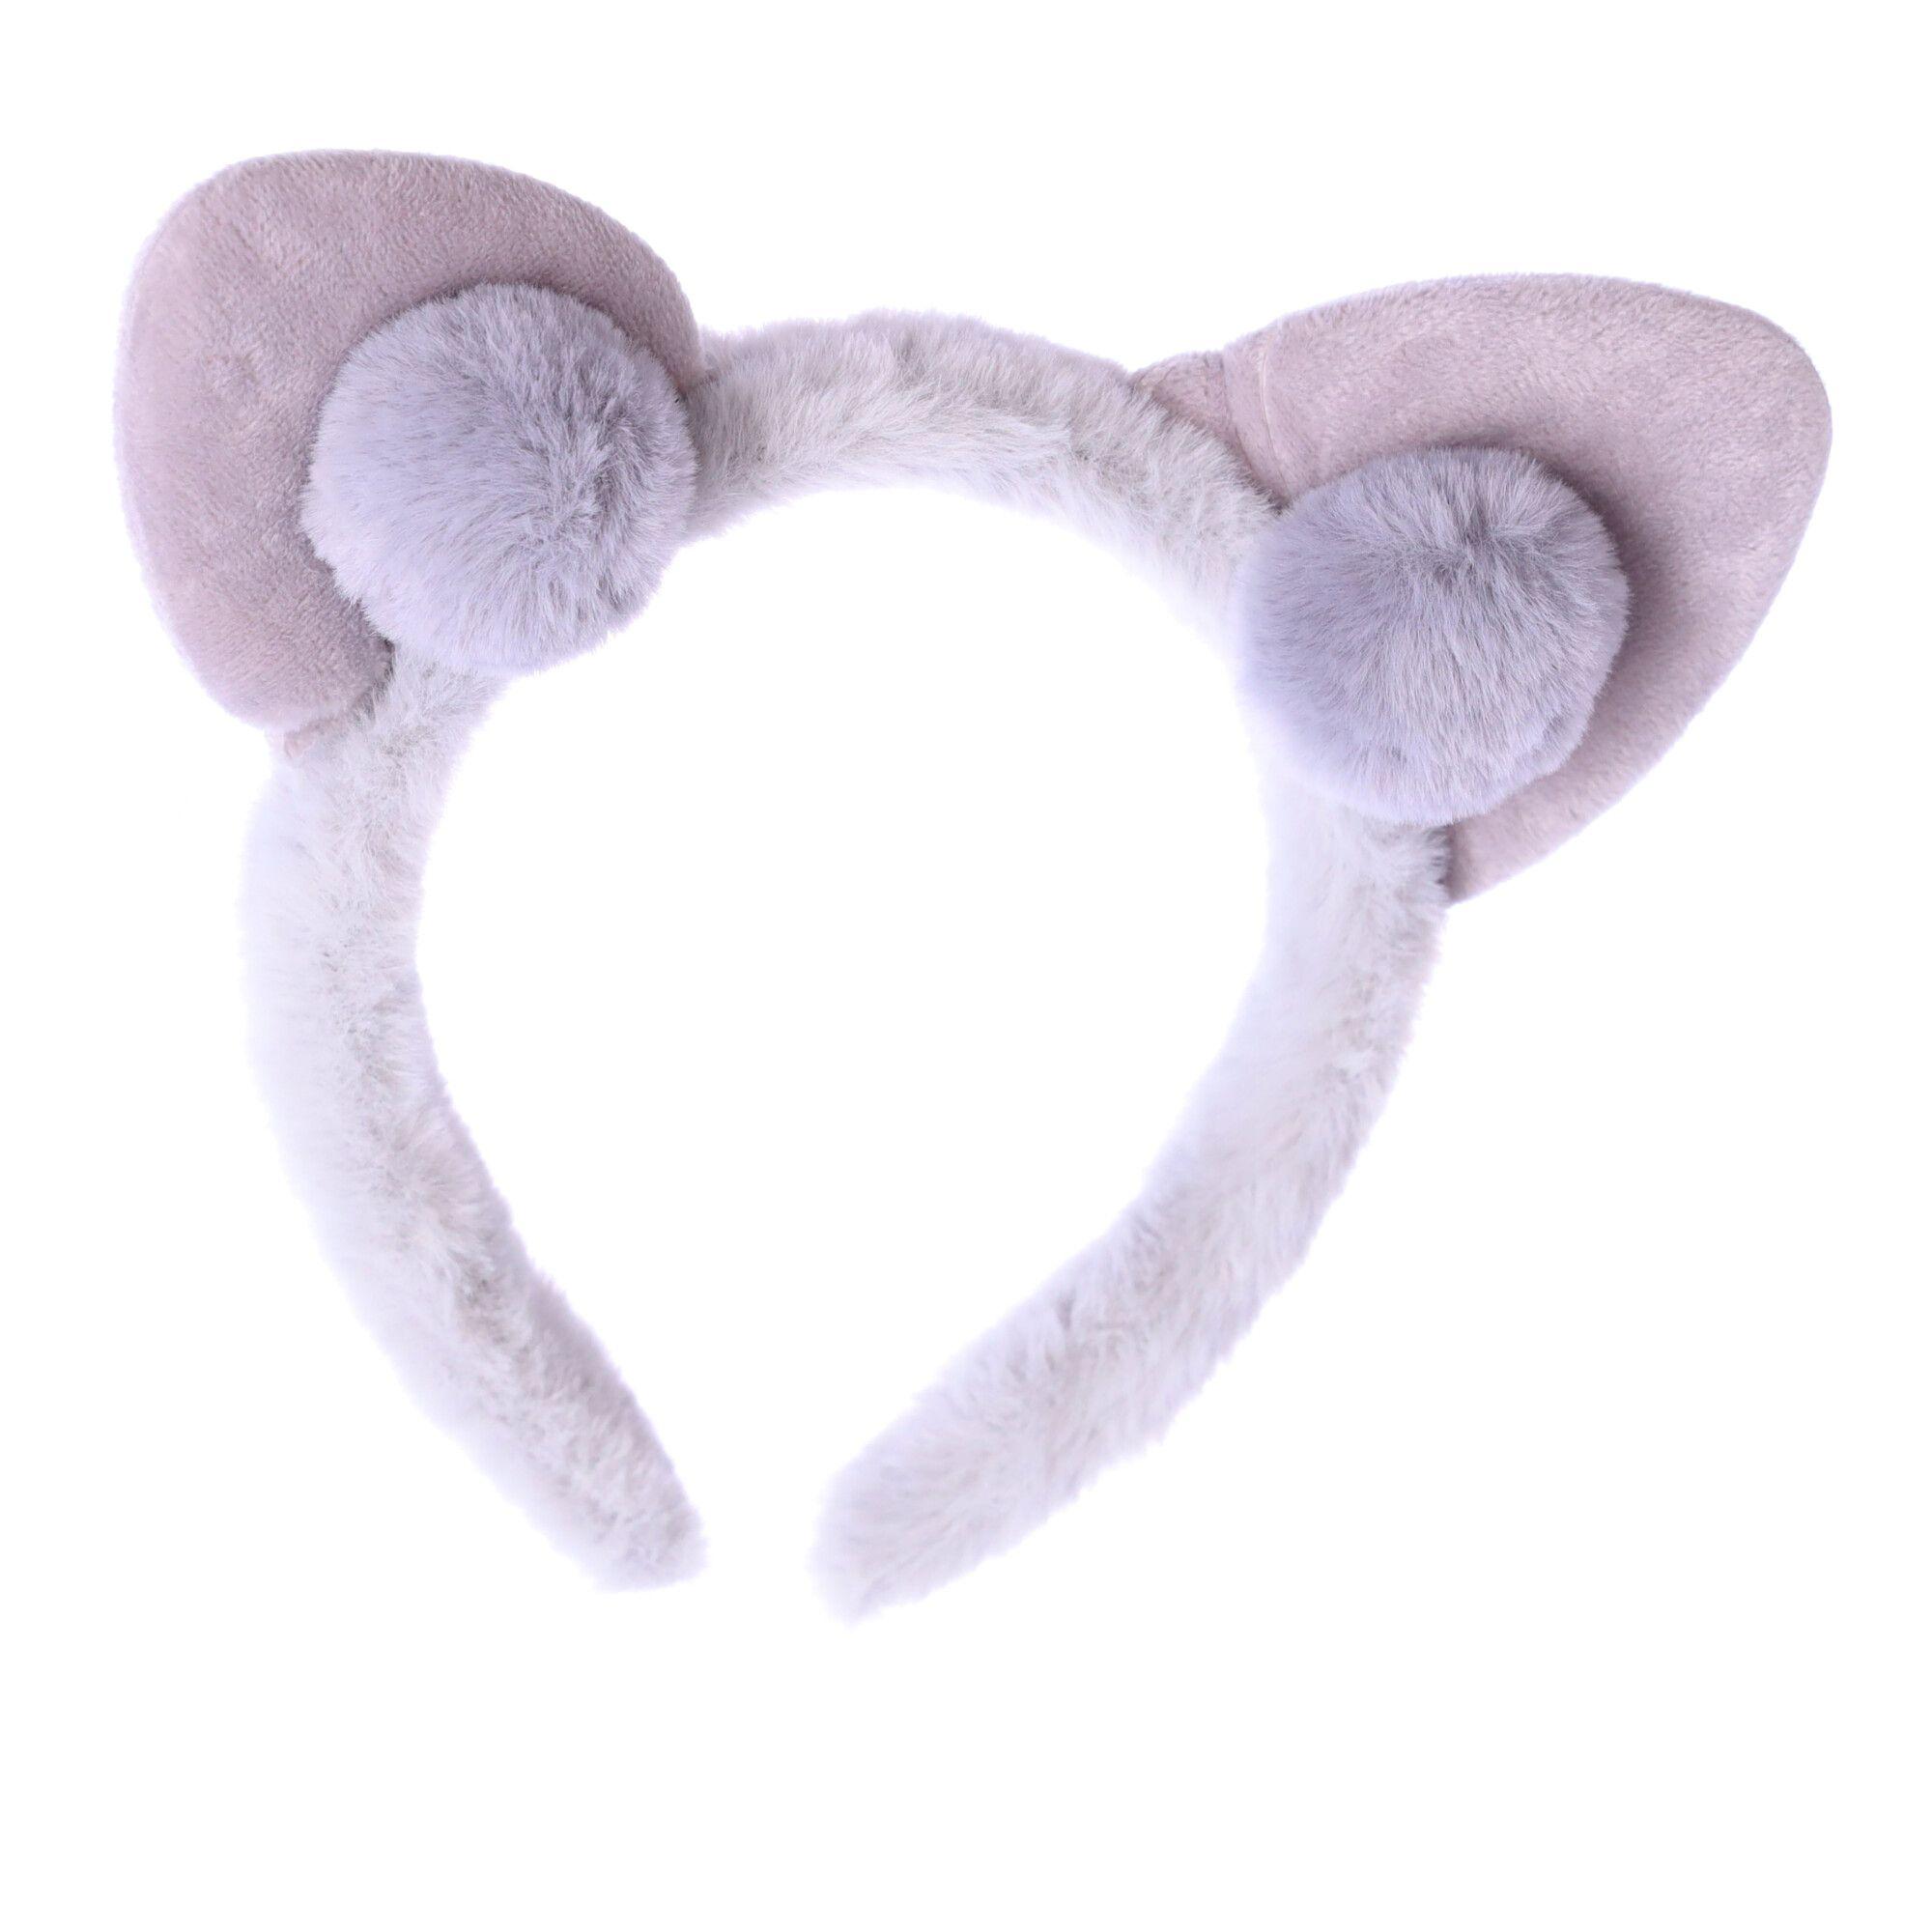 Plush headband with cat ears - gray